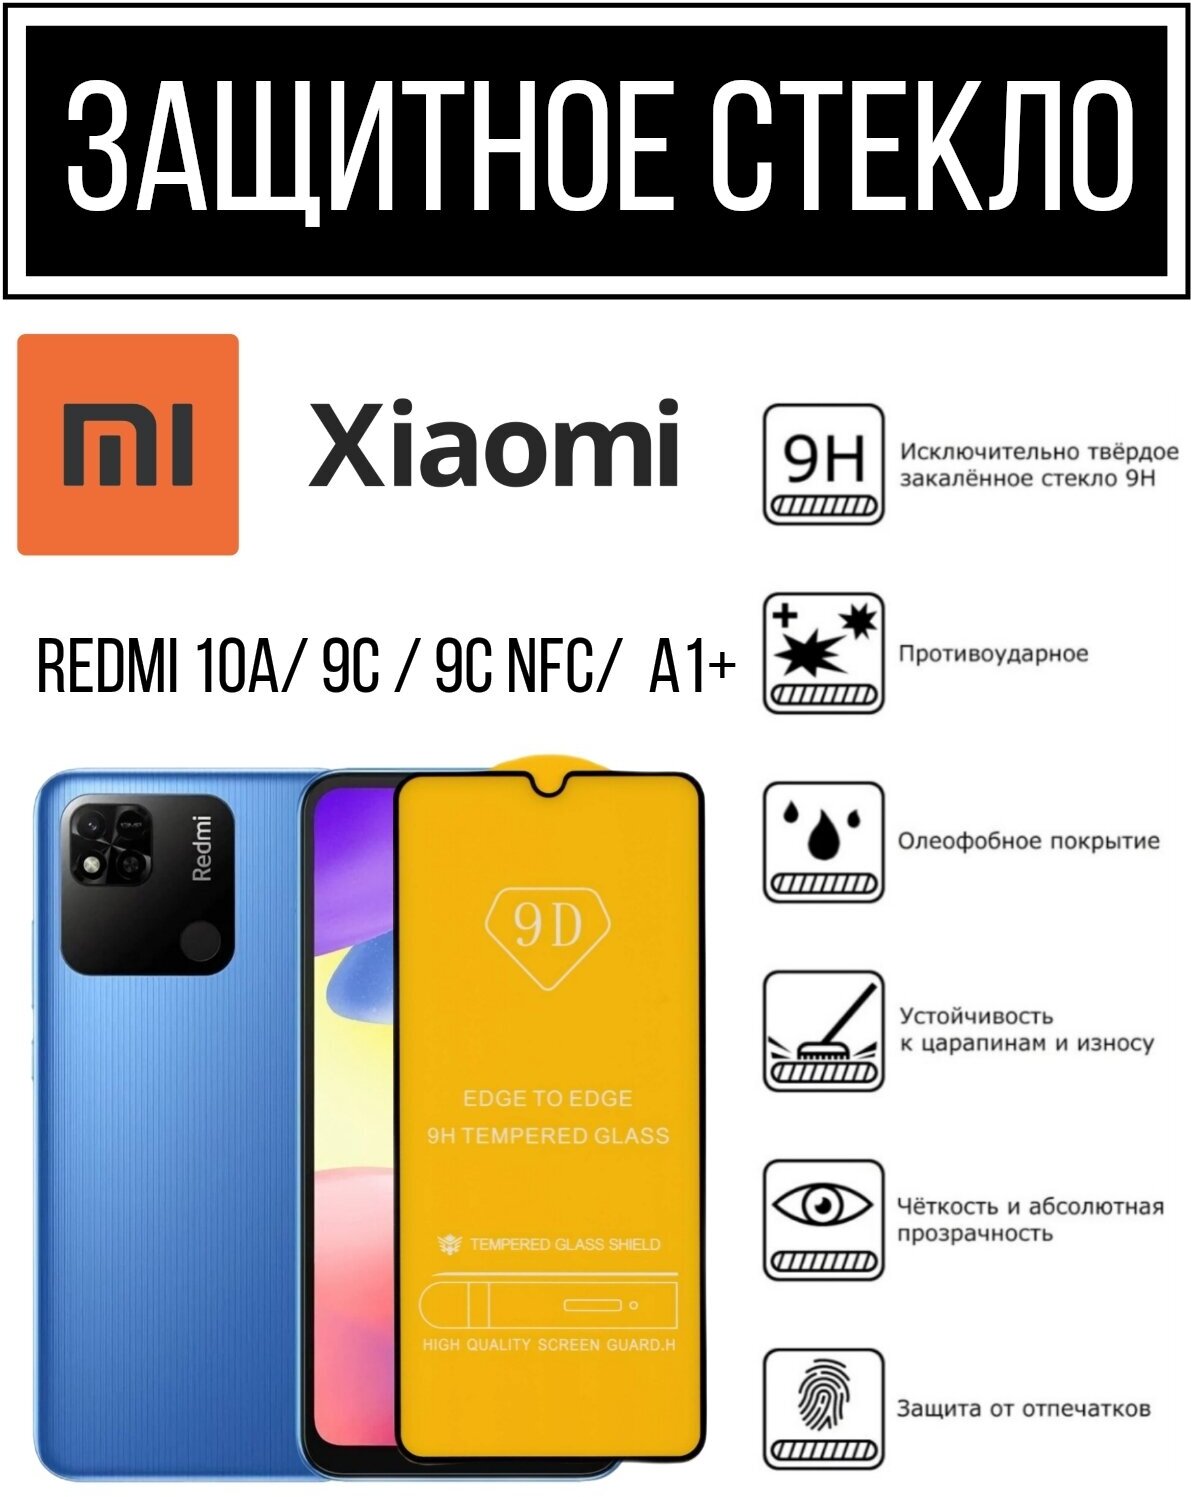 Противоударное закалённое защитное стекло для смартфонов Xiaomi Redmi 9A/ 9C/ 10A. Ксиаоми Редми 9А/ 9С/ 10А